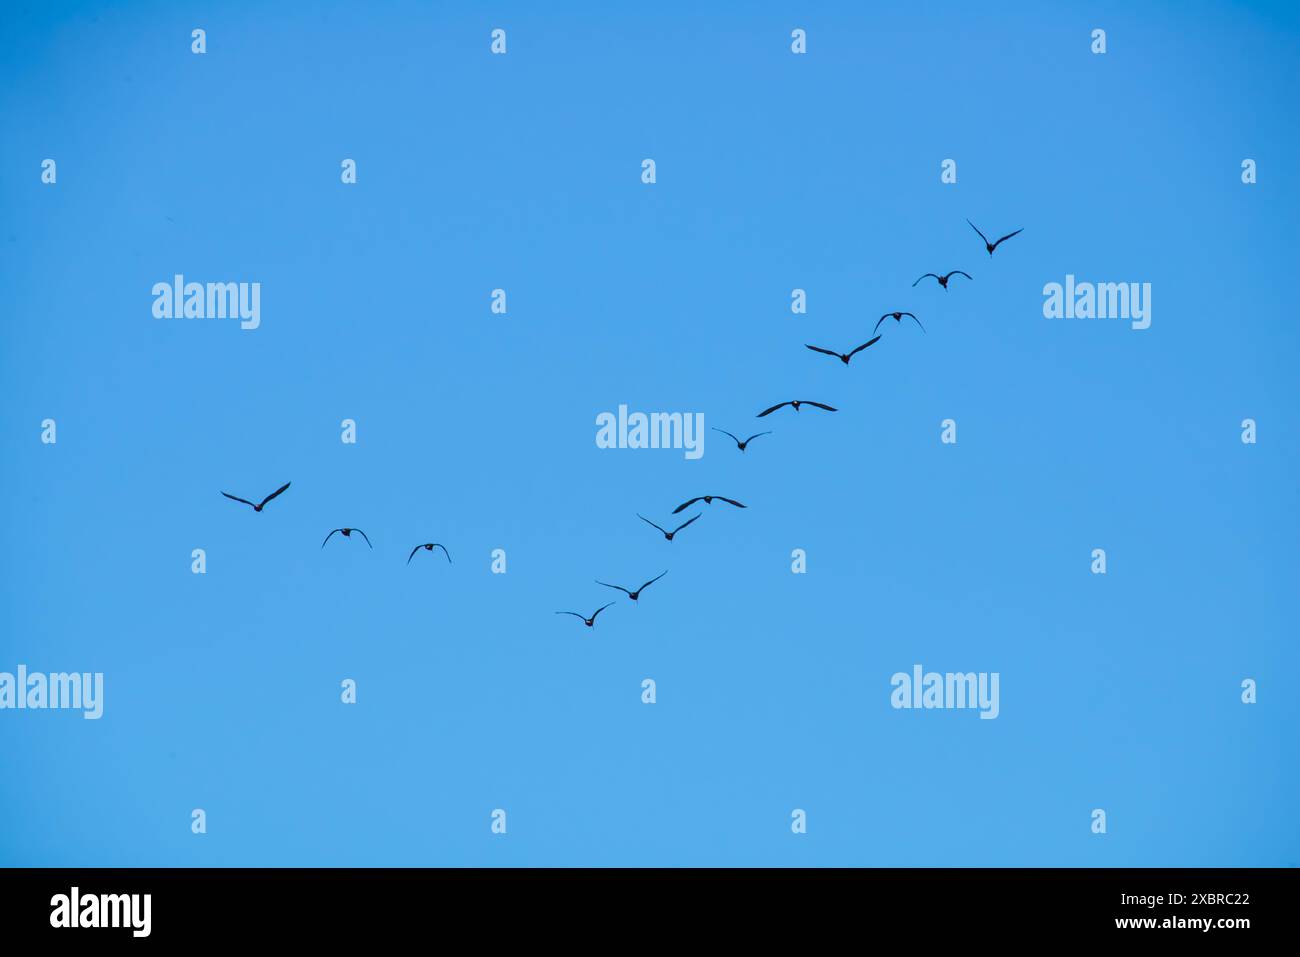 Eine Herde von Ibisen, die in Formation fliegen. Stockfoto